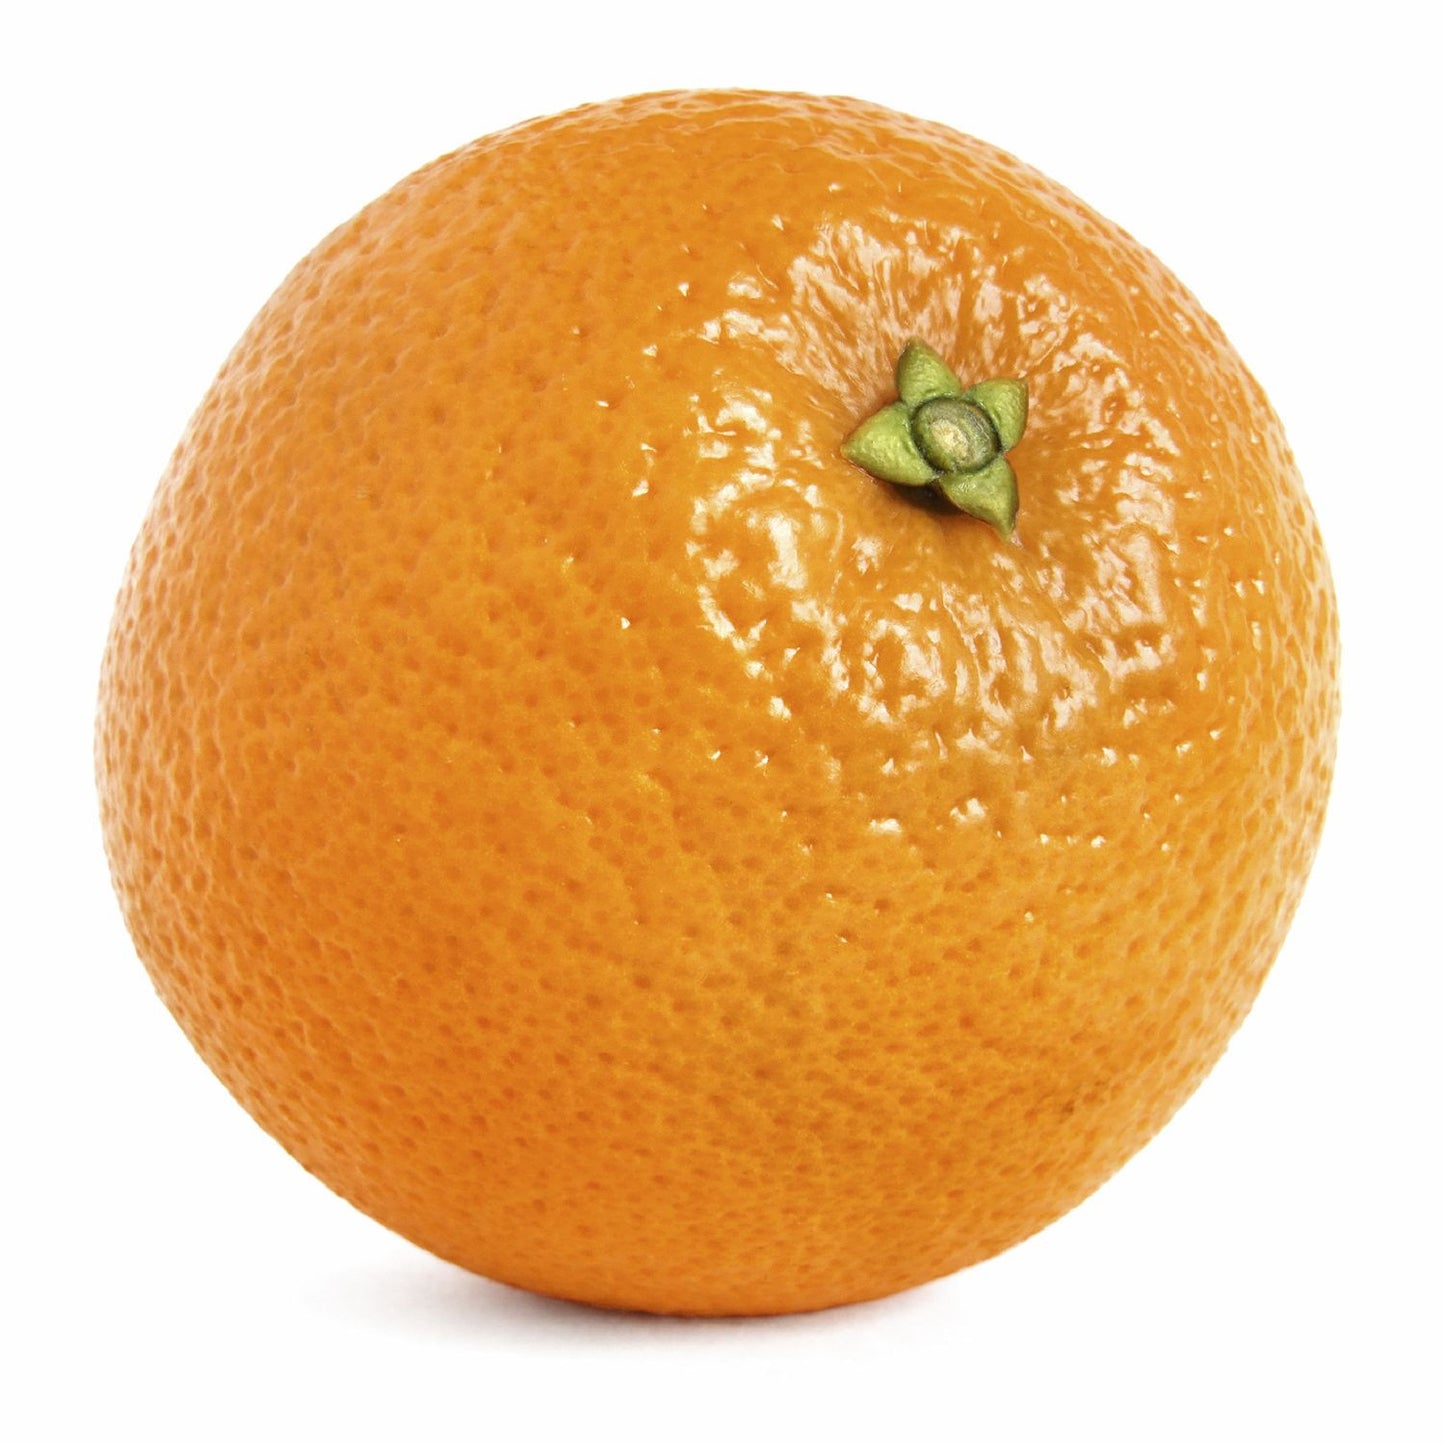 California Navel Oranges (8 lb.)